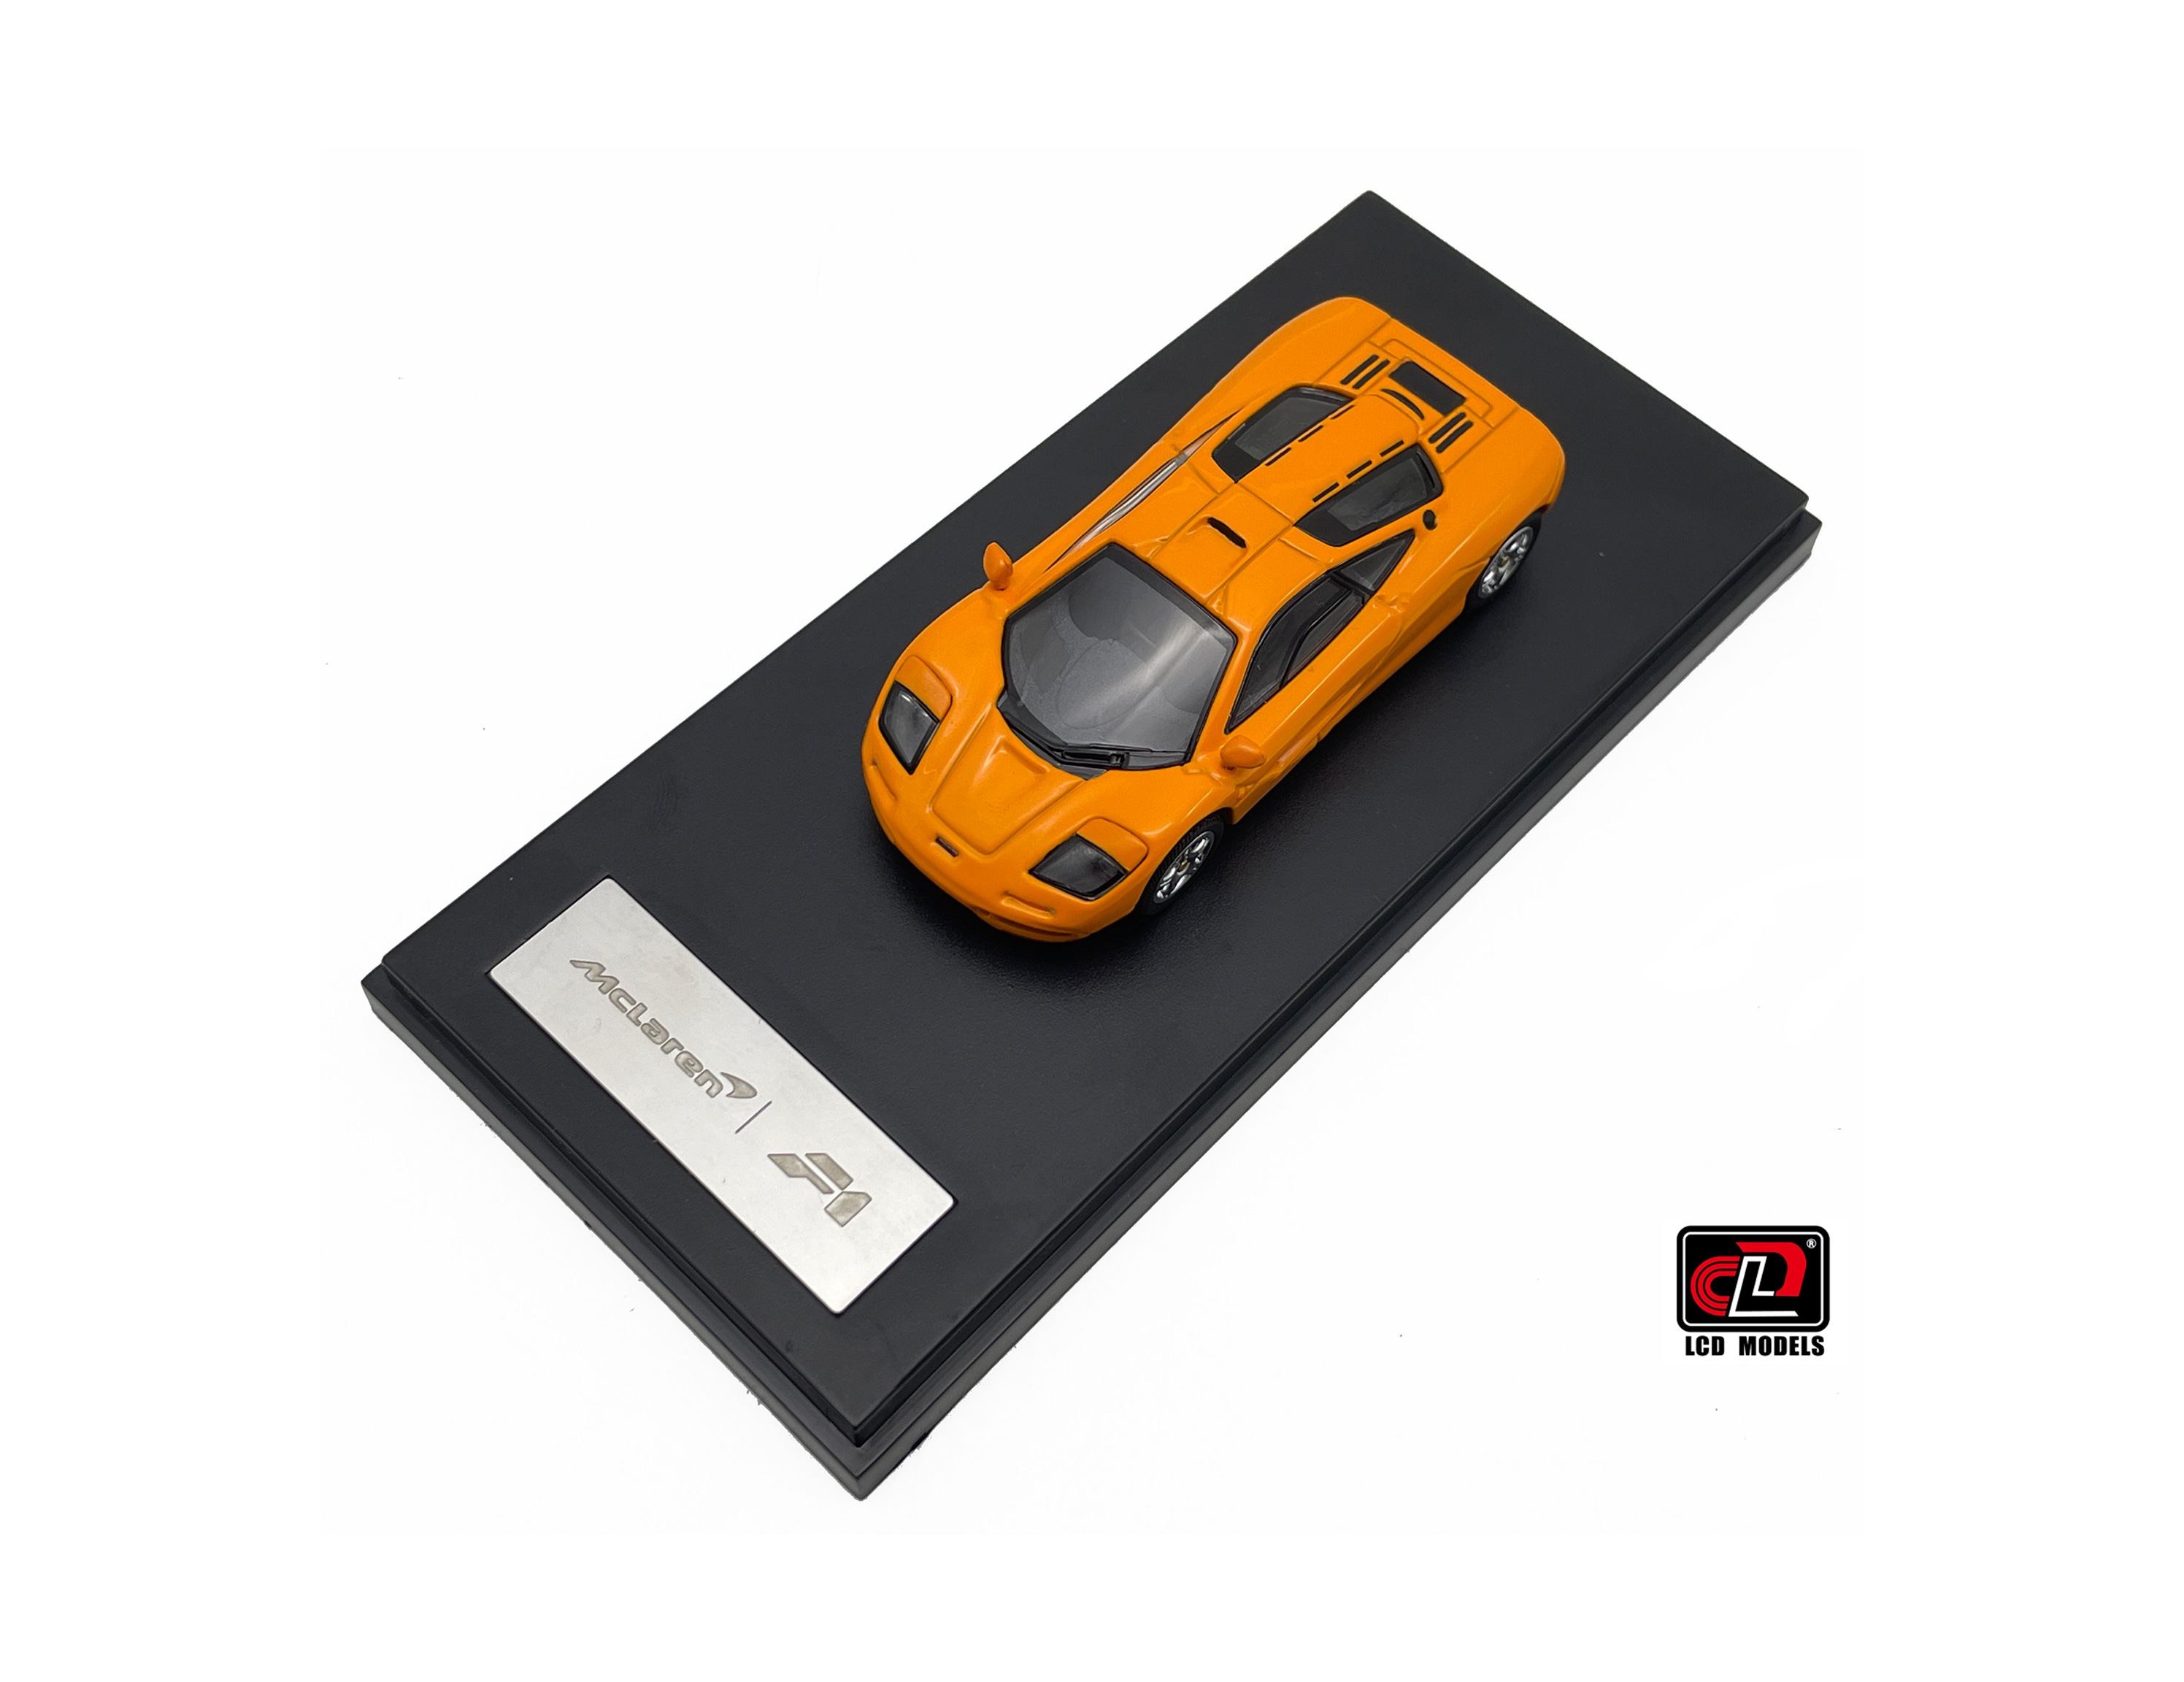 McLaren F1 Orange Minichamps 1/18